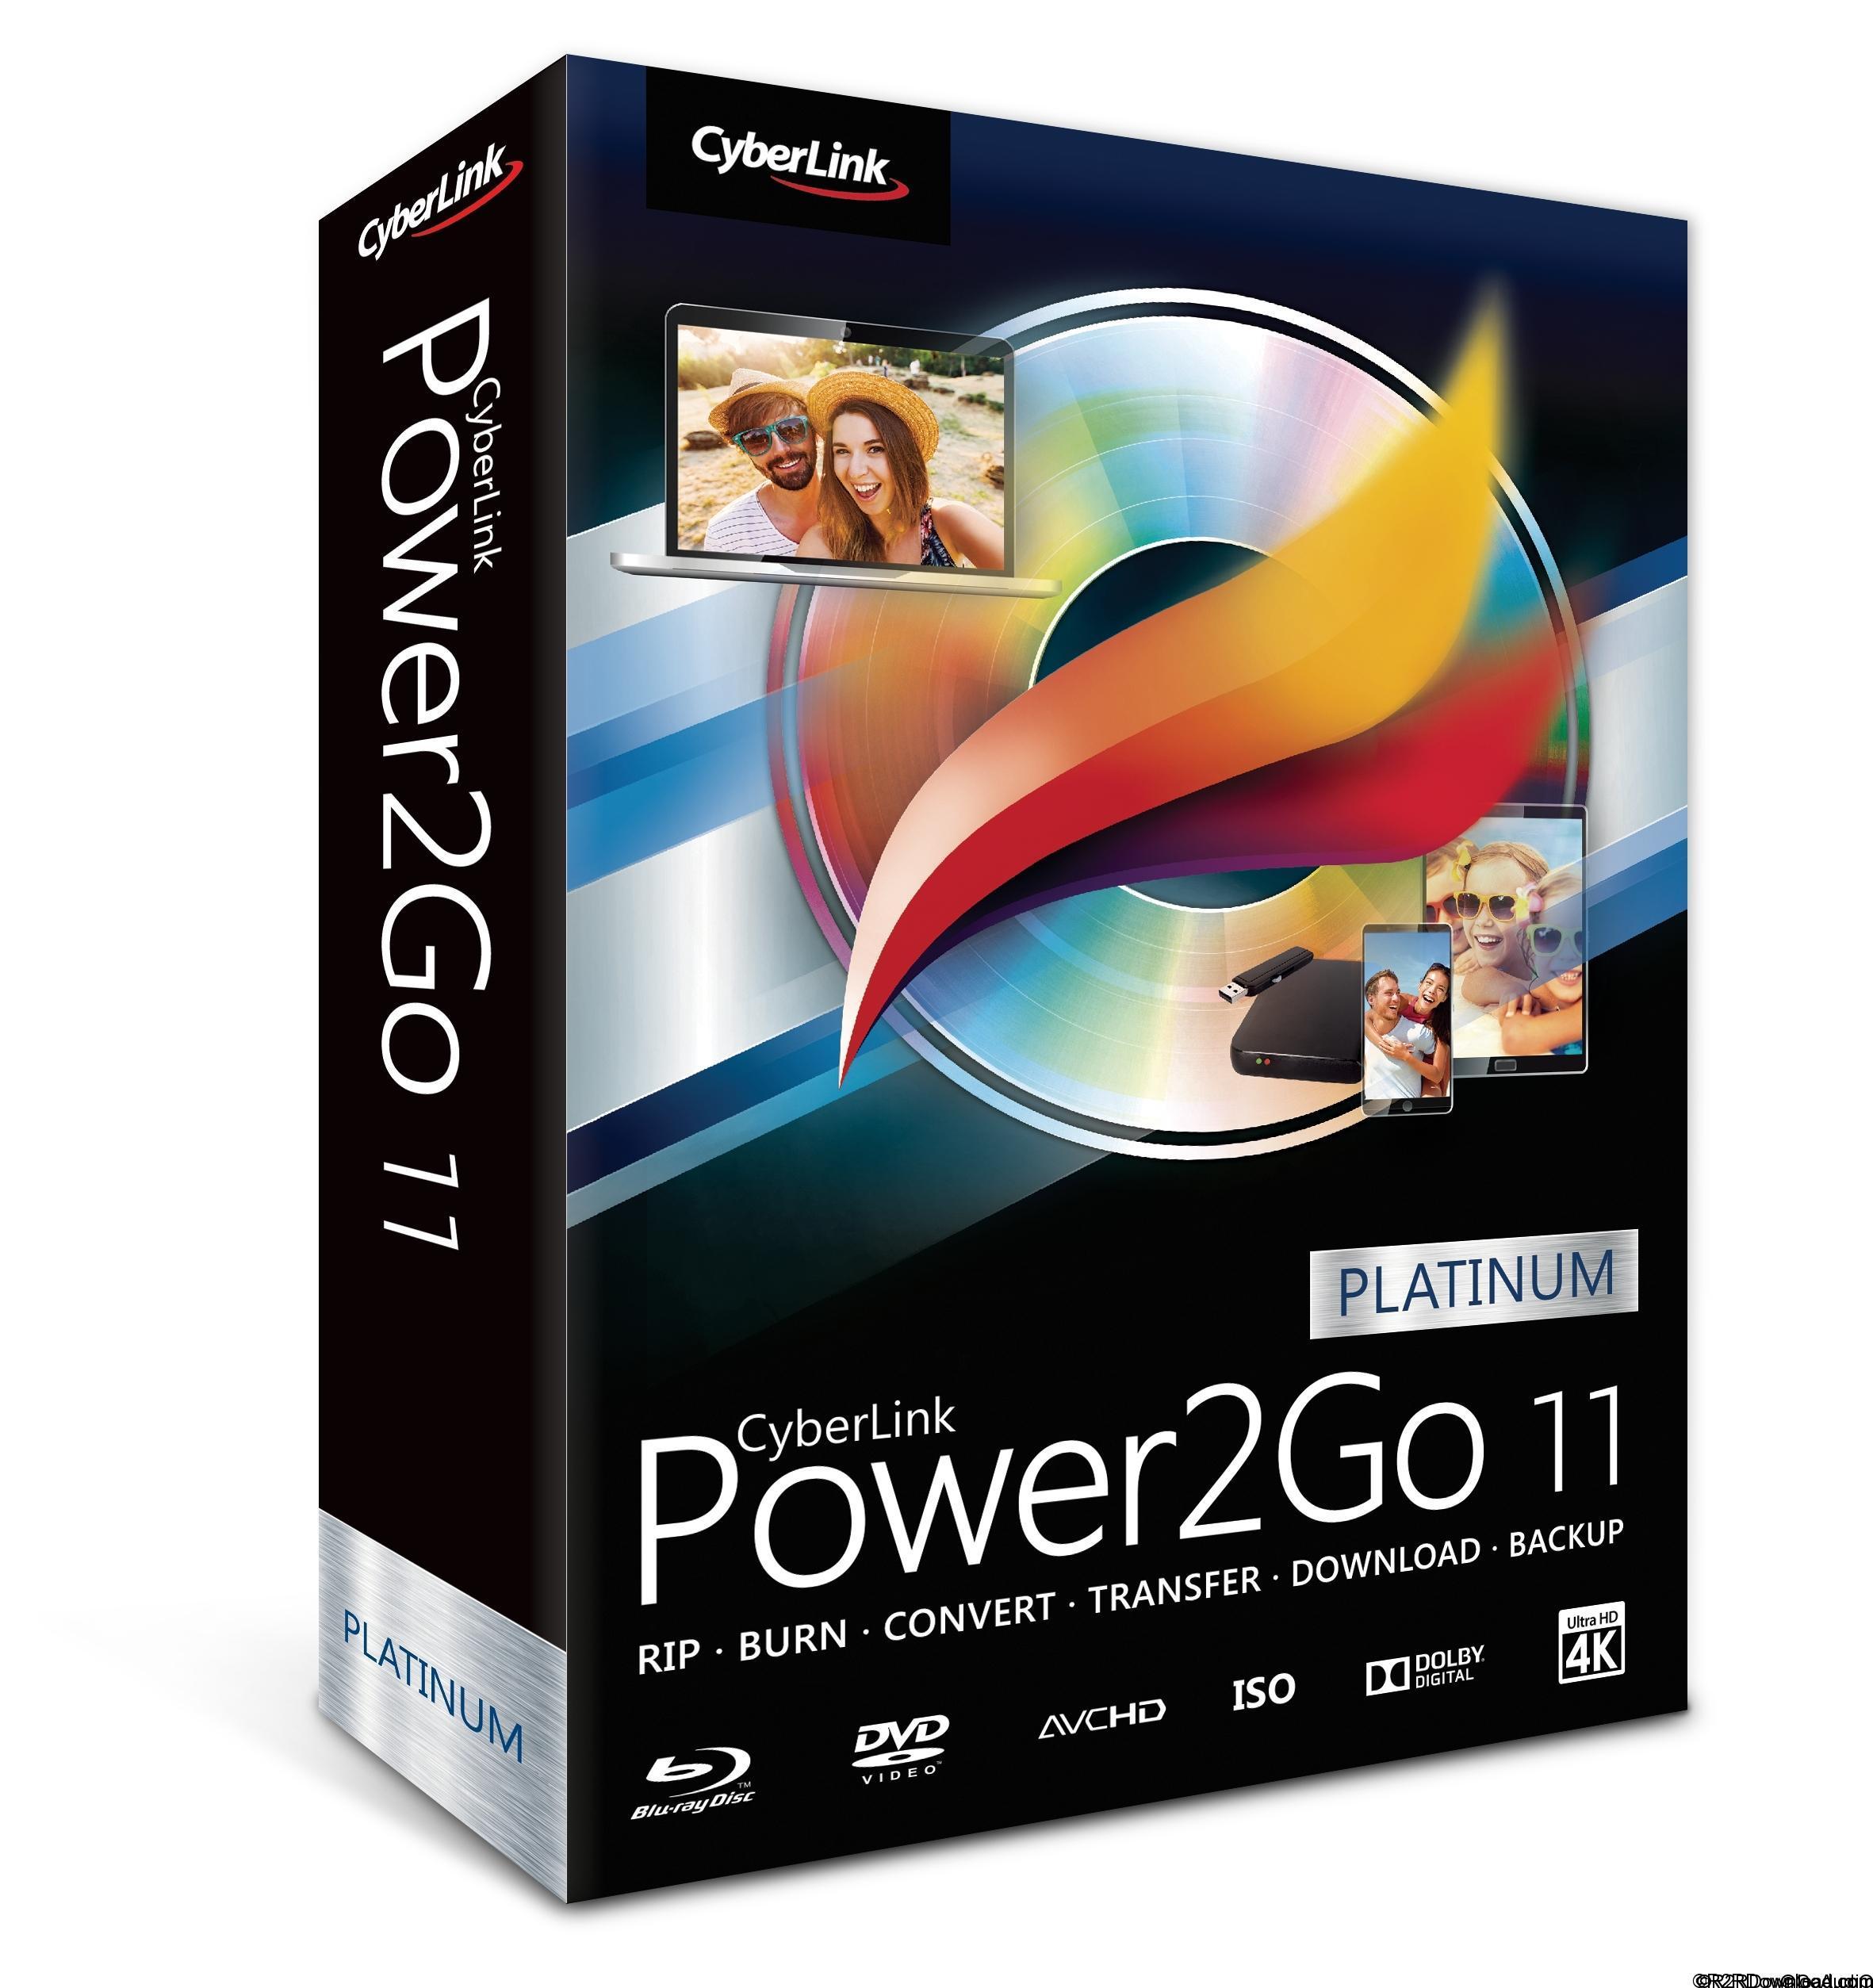 CyberLink Power2Go Platinum 11 Free Download